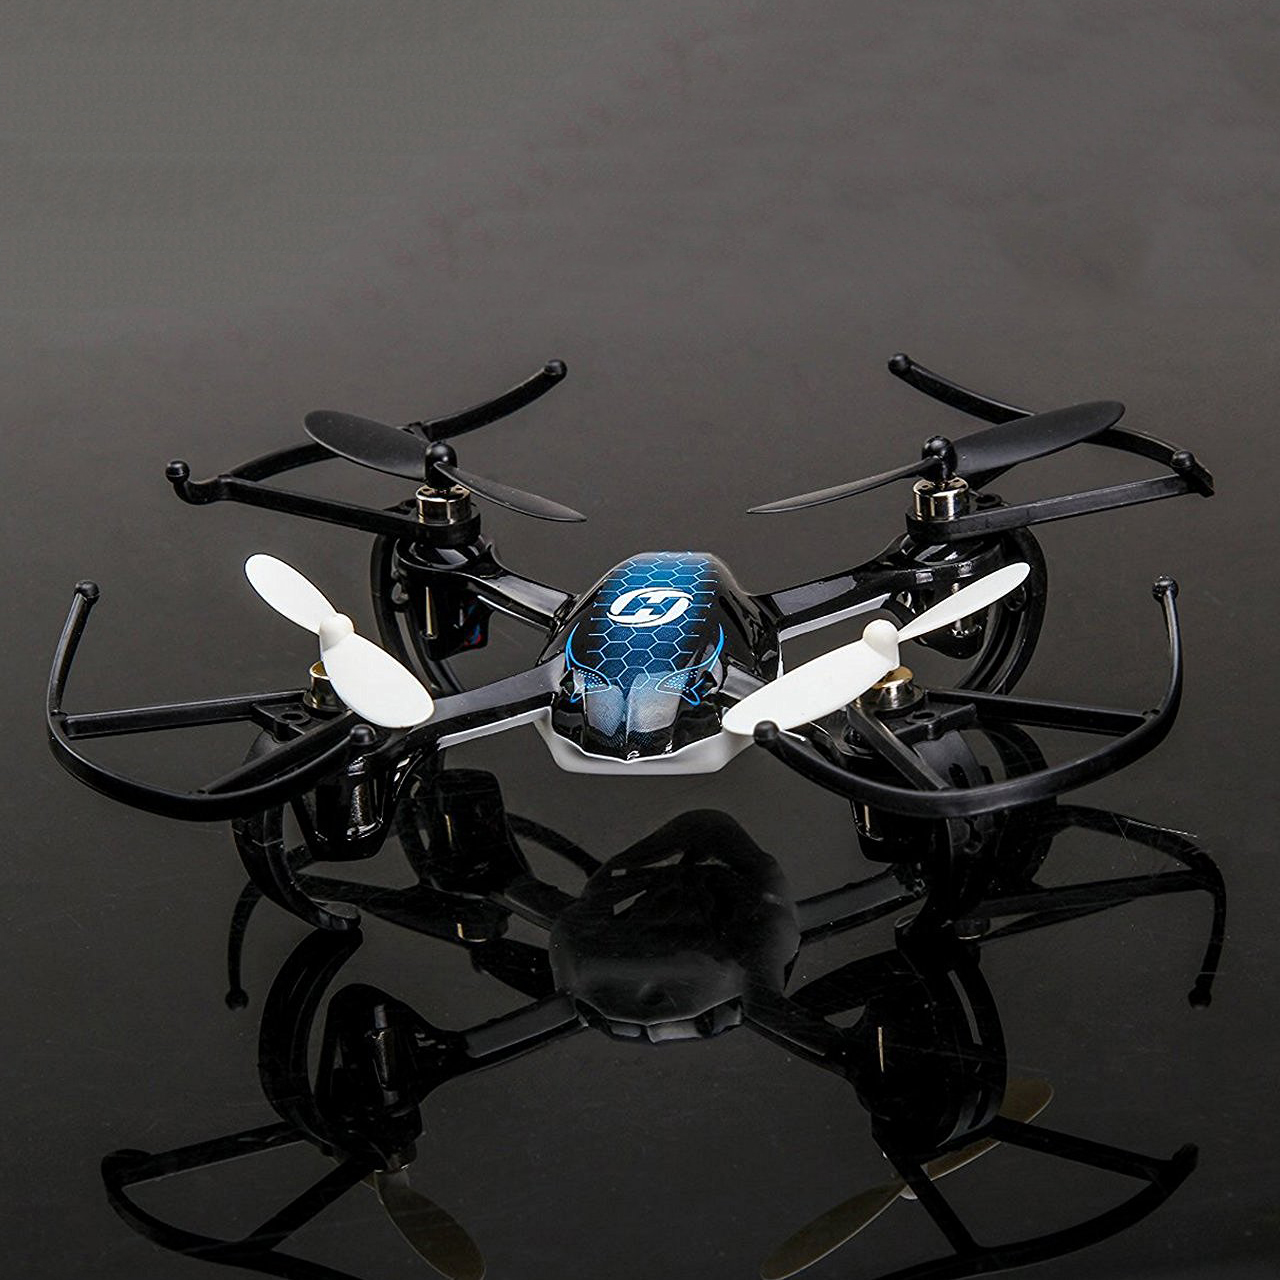 Predator Quadcopter Drone